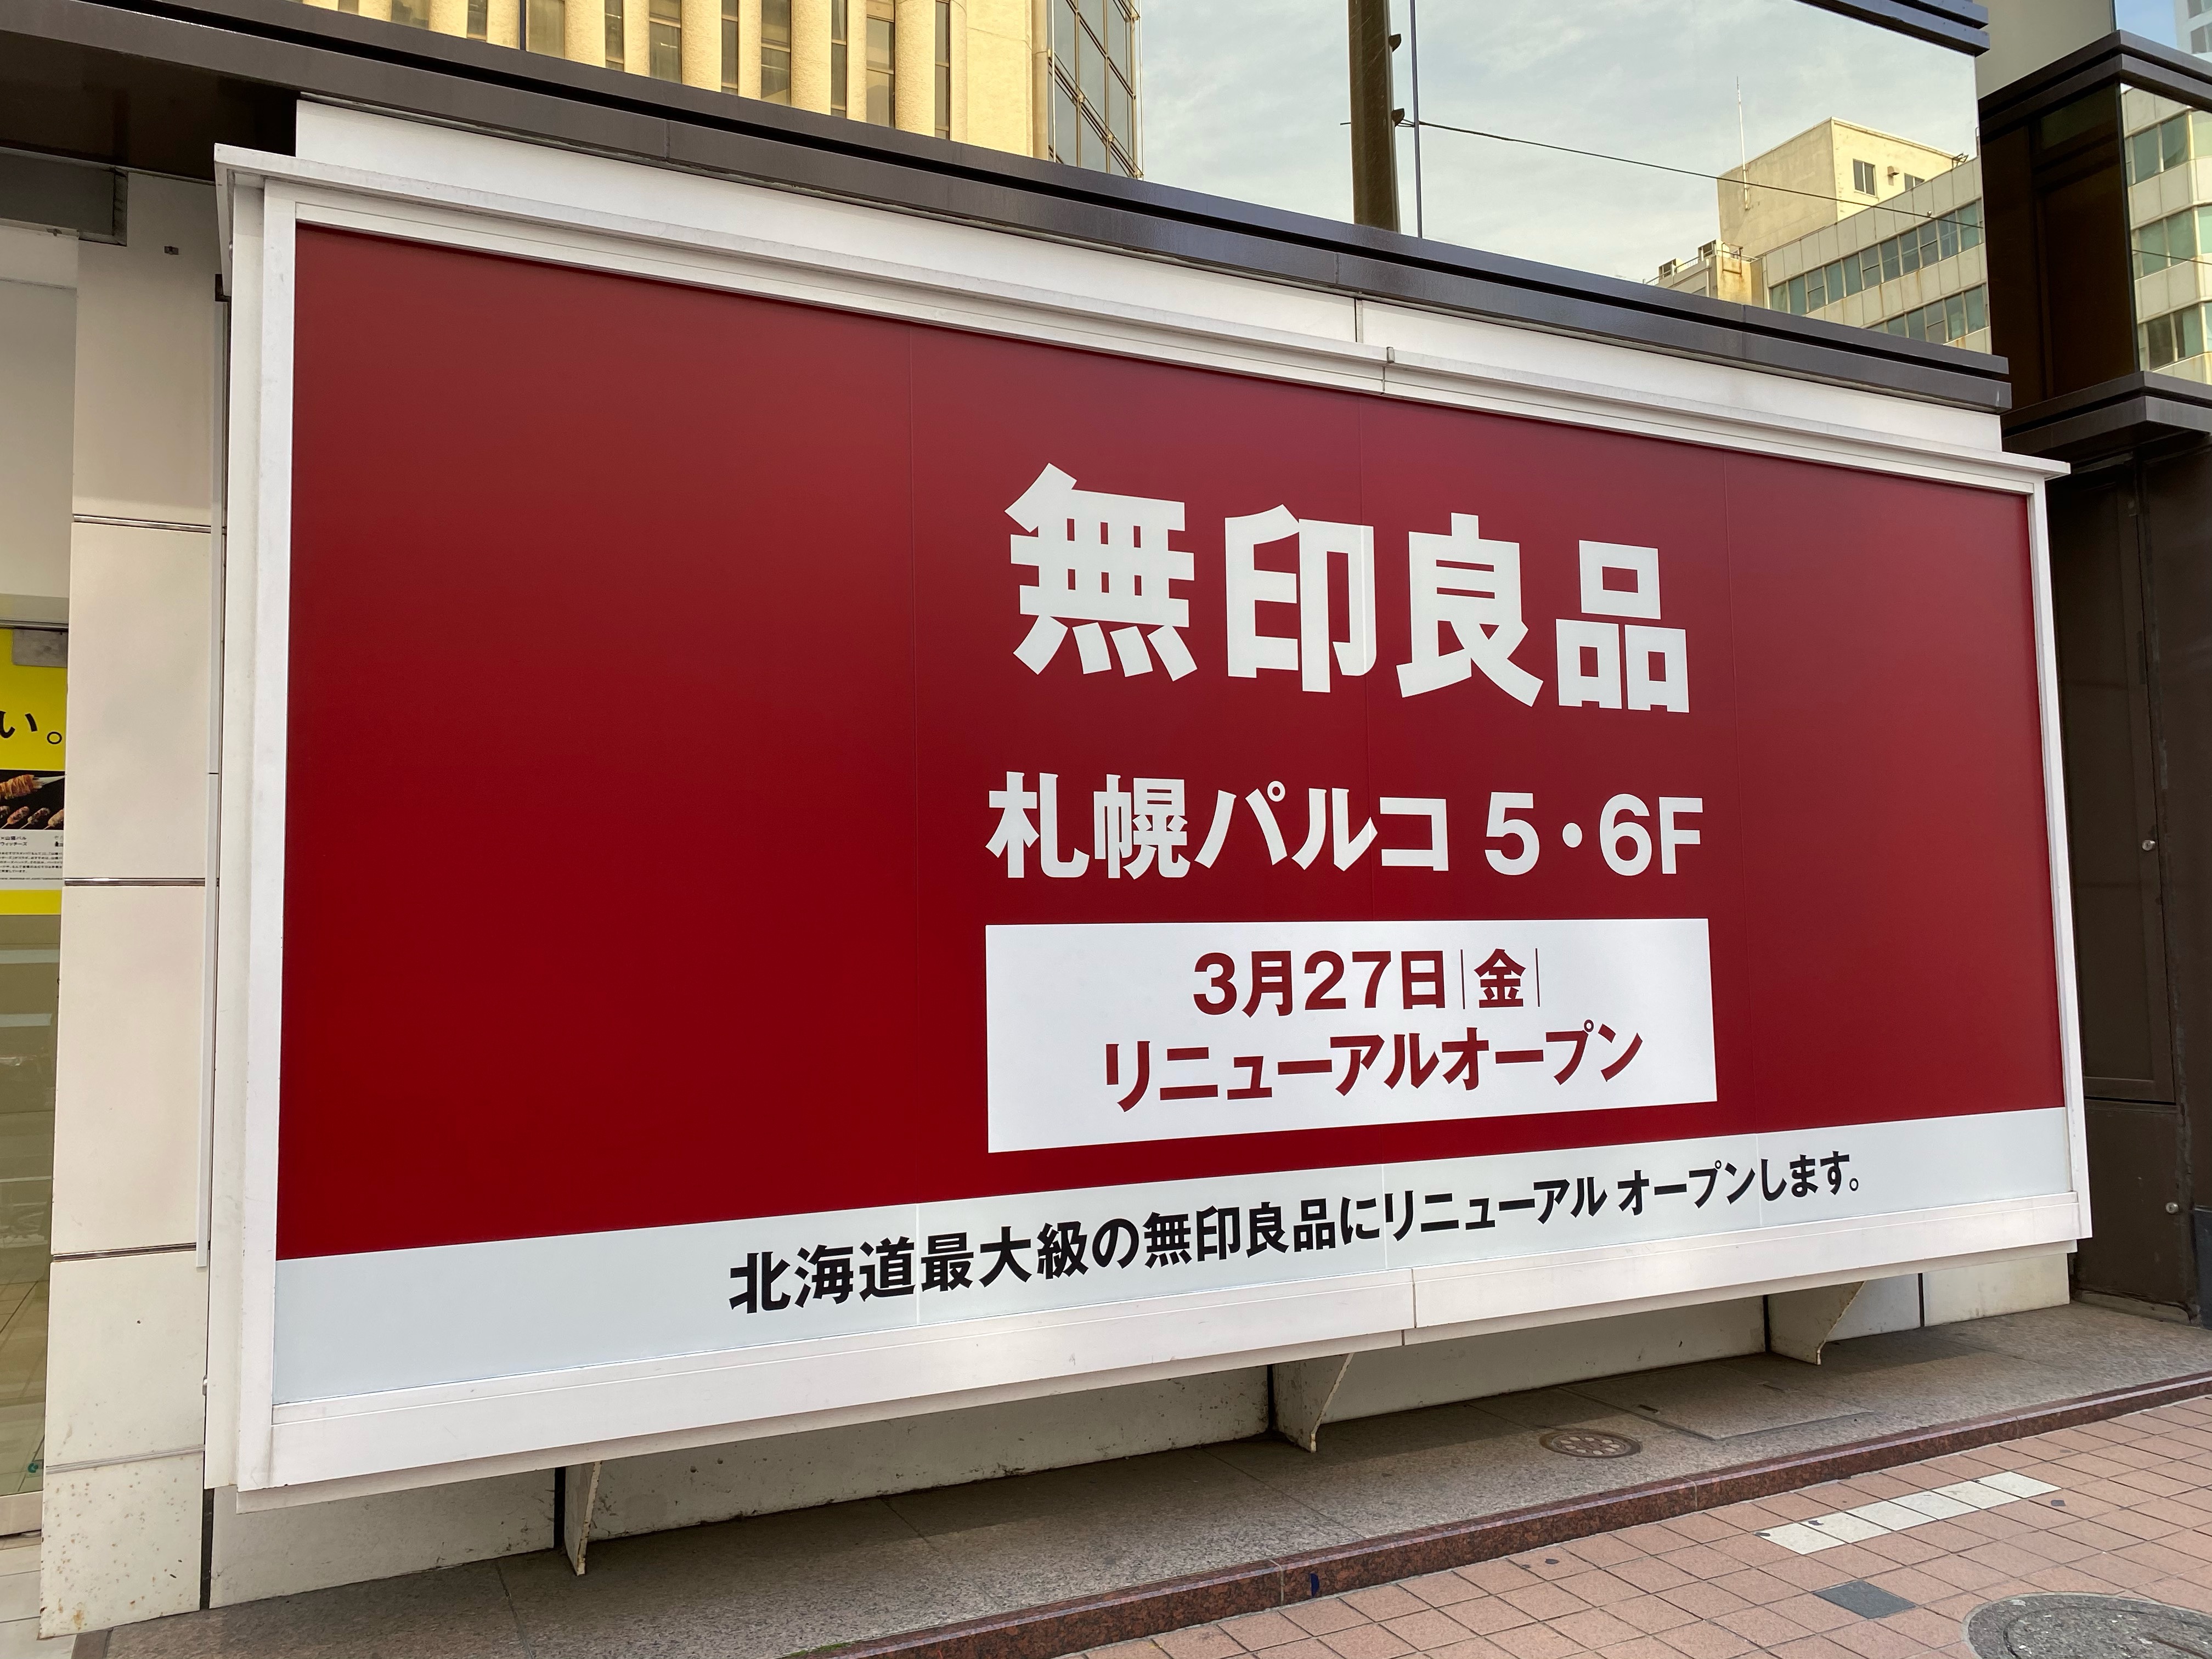 札幌パルコに登場した「無印良品」リニューアルの案内広告